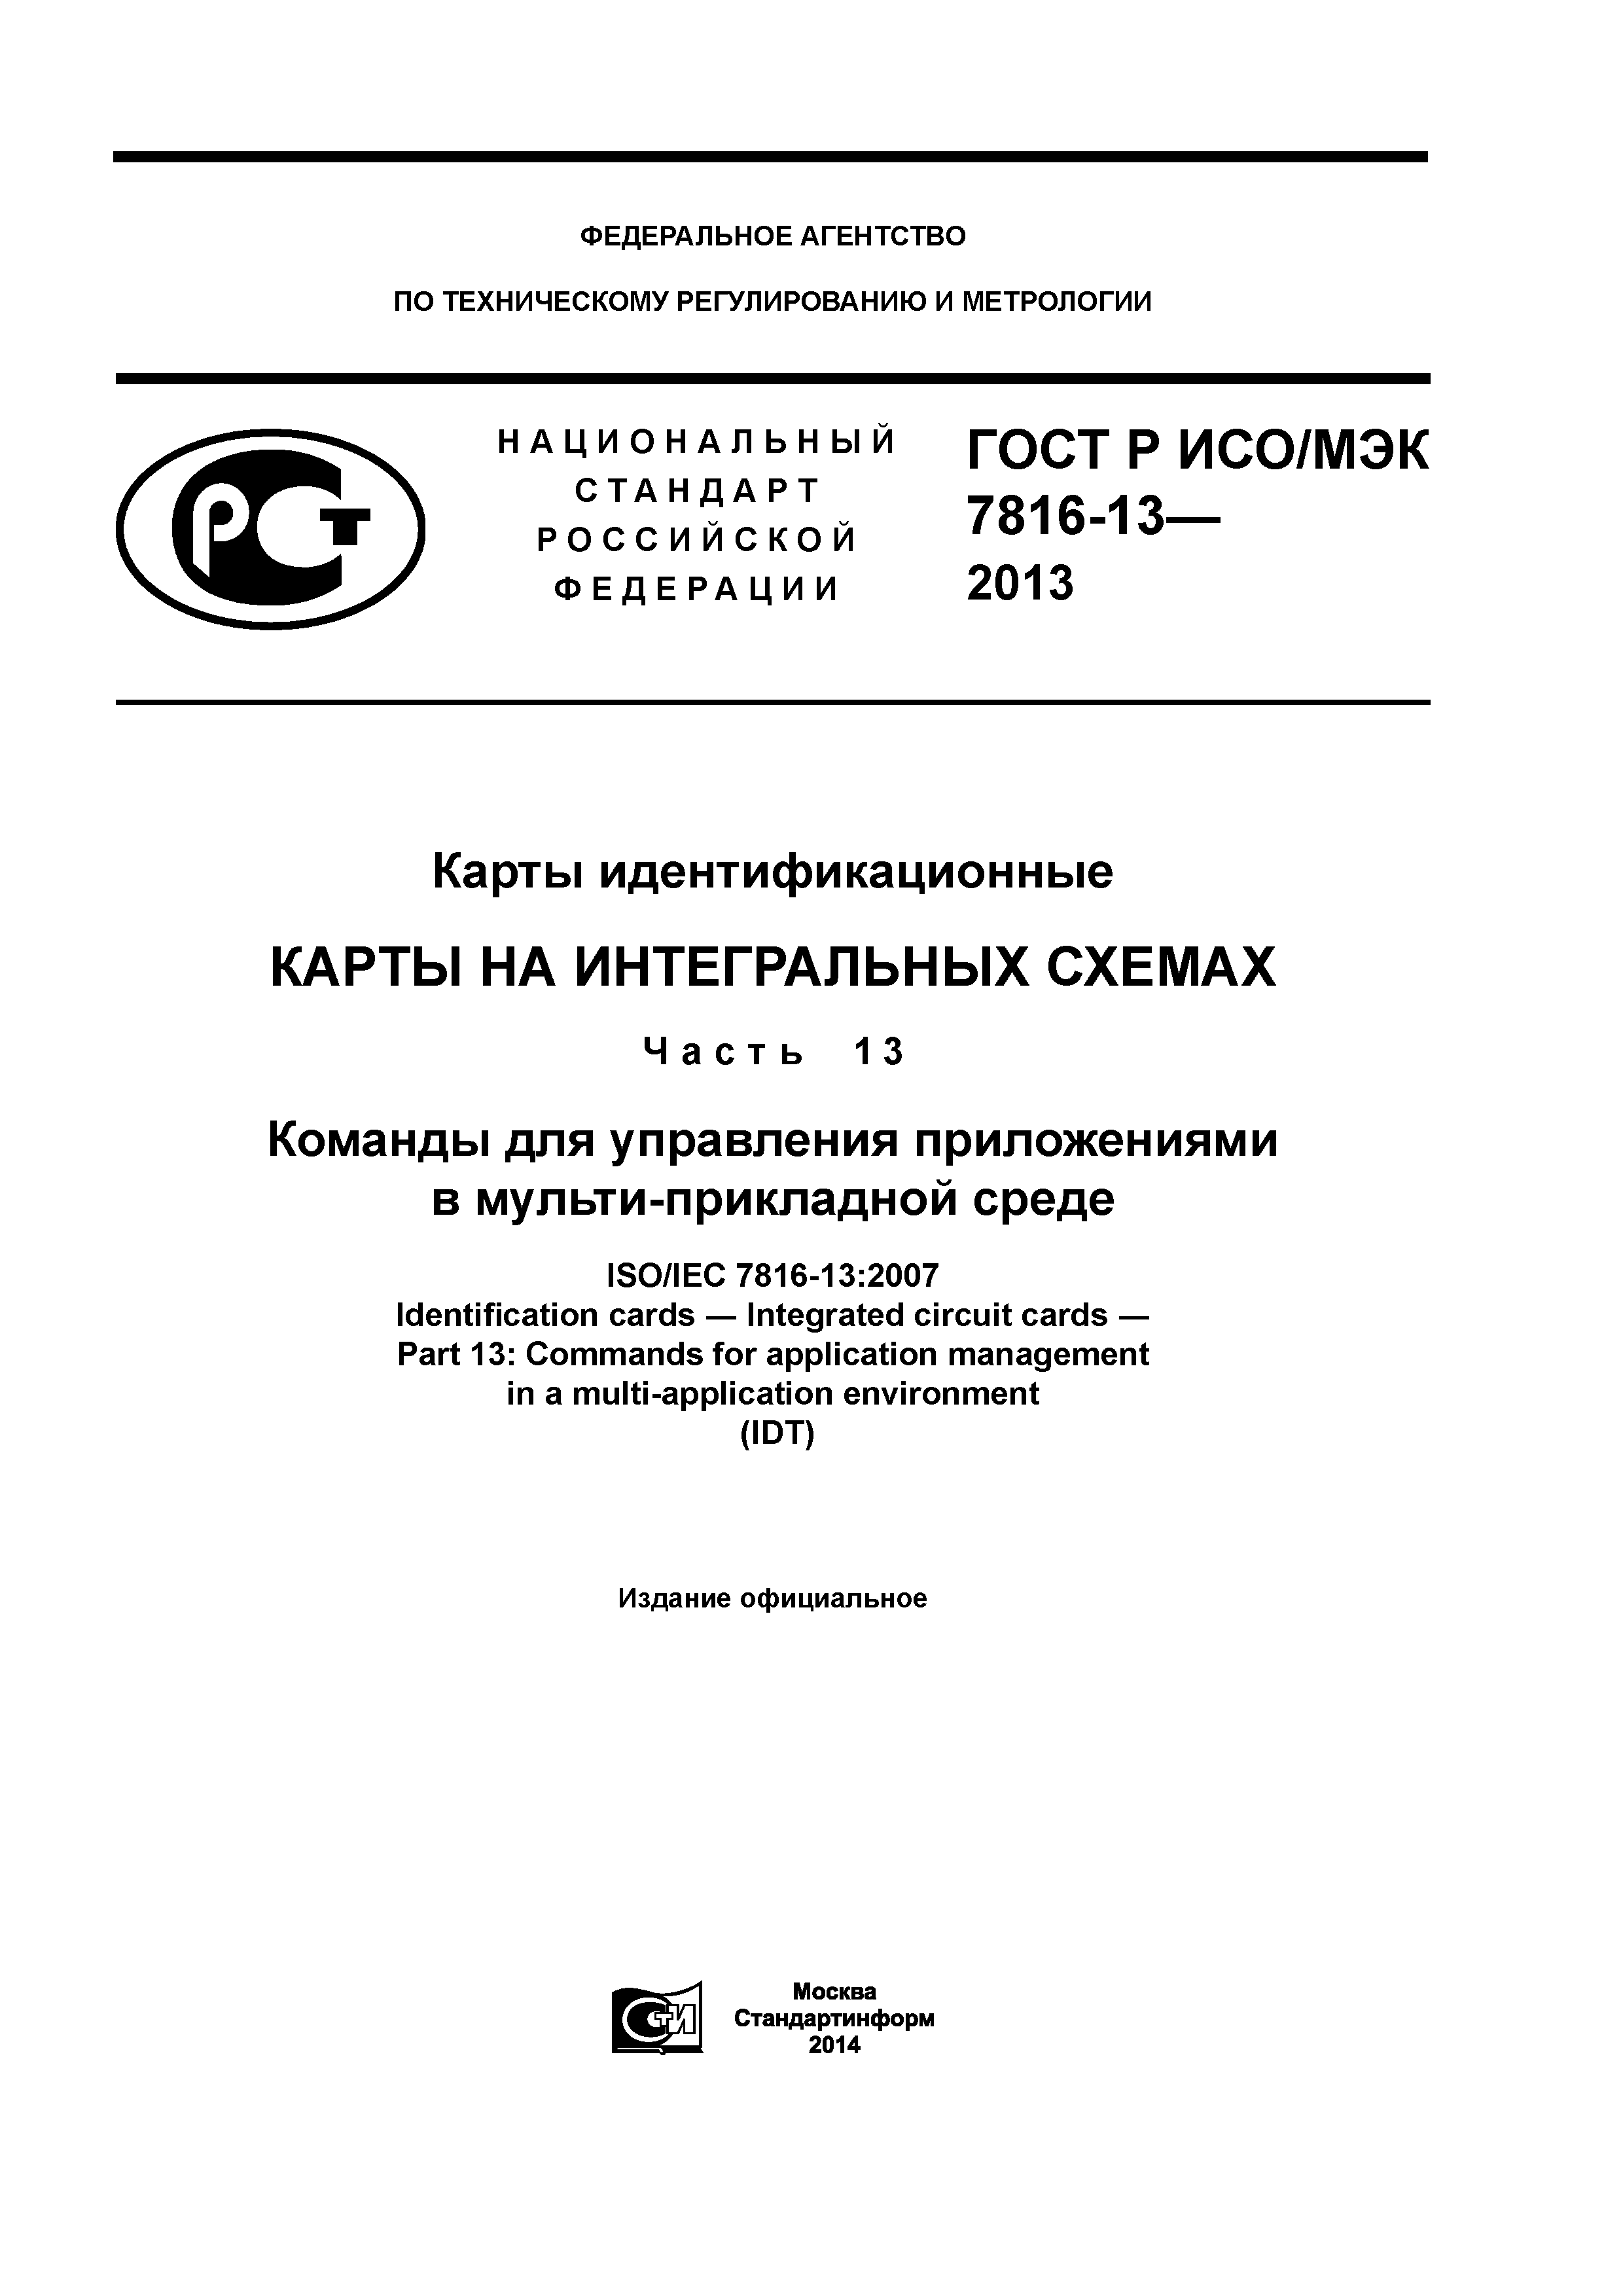 ГОСТ Р ИСО/МЭК 7816-13-2013